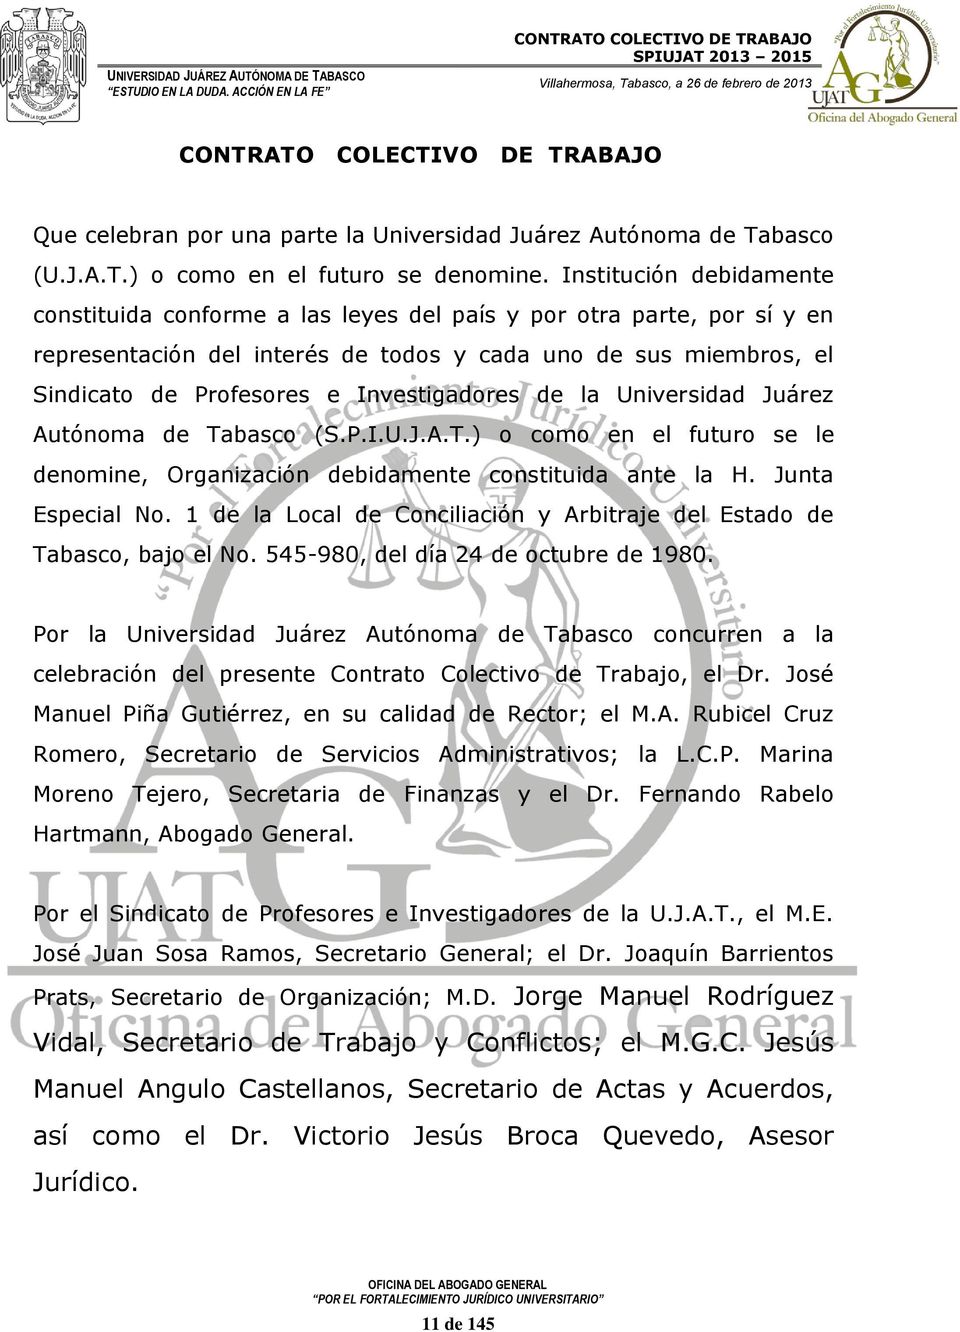 Investigadores de la Universidad Juárez Autónoma de Tabasco (S.P.I.U.J.A.T.) o como en el futuro se le denomine, Organización debidamente constituida ante la H. Junta Especial No.